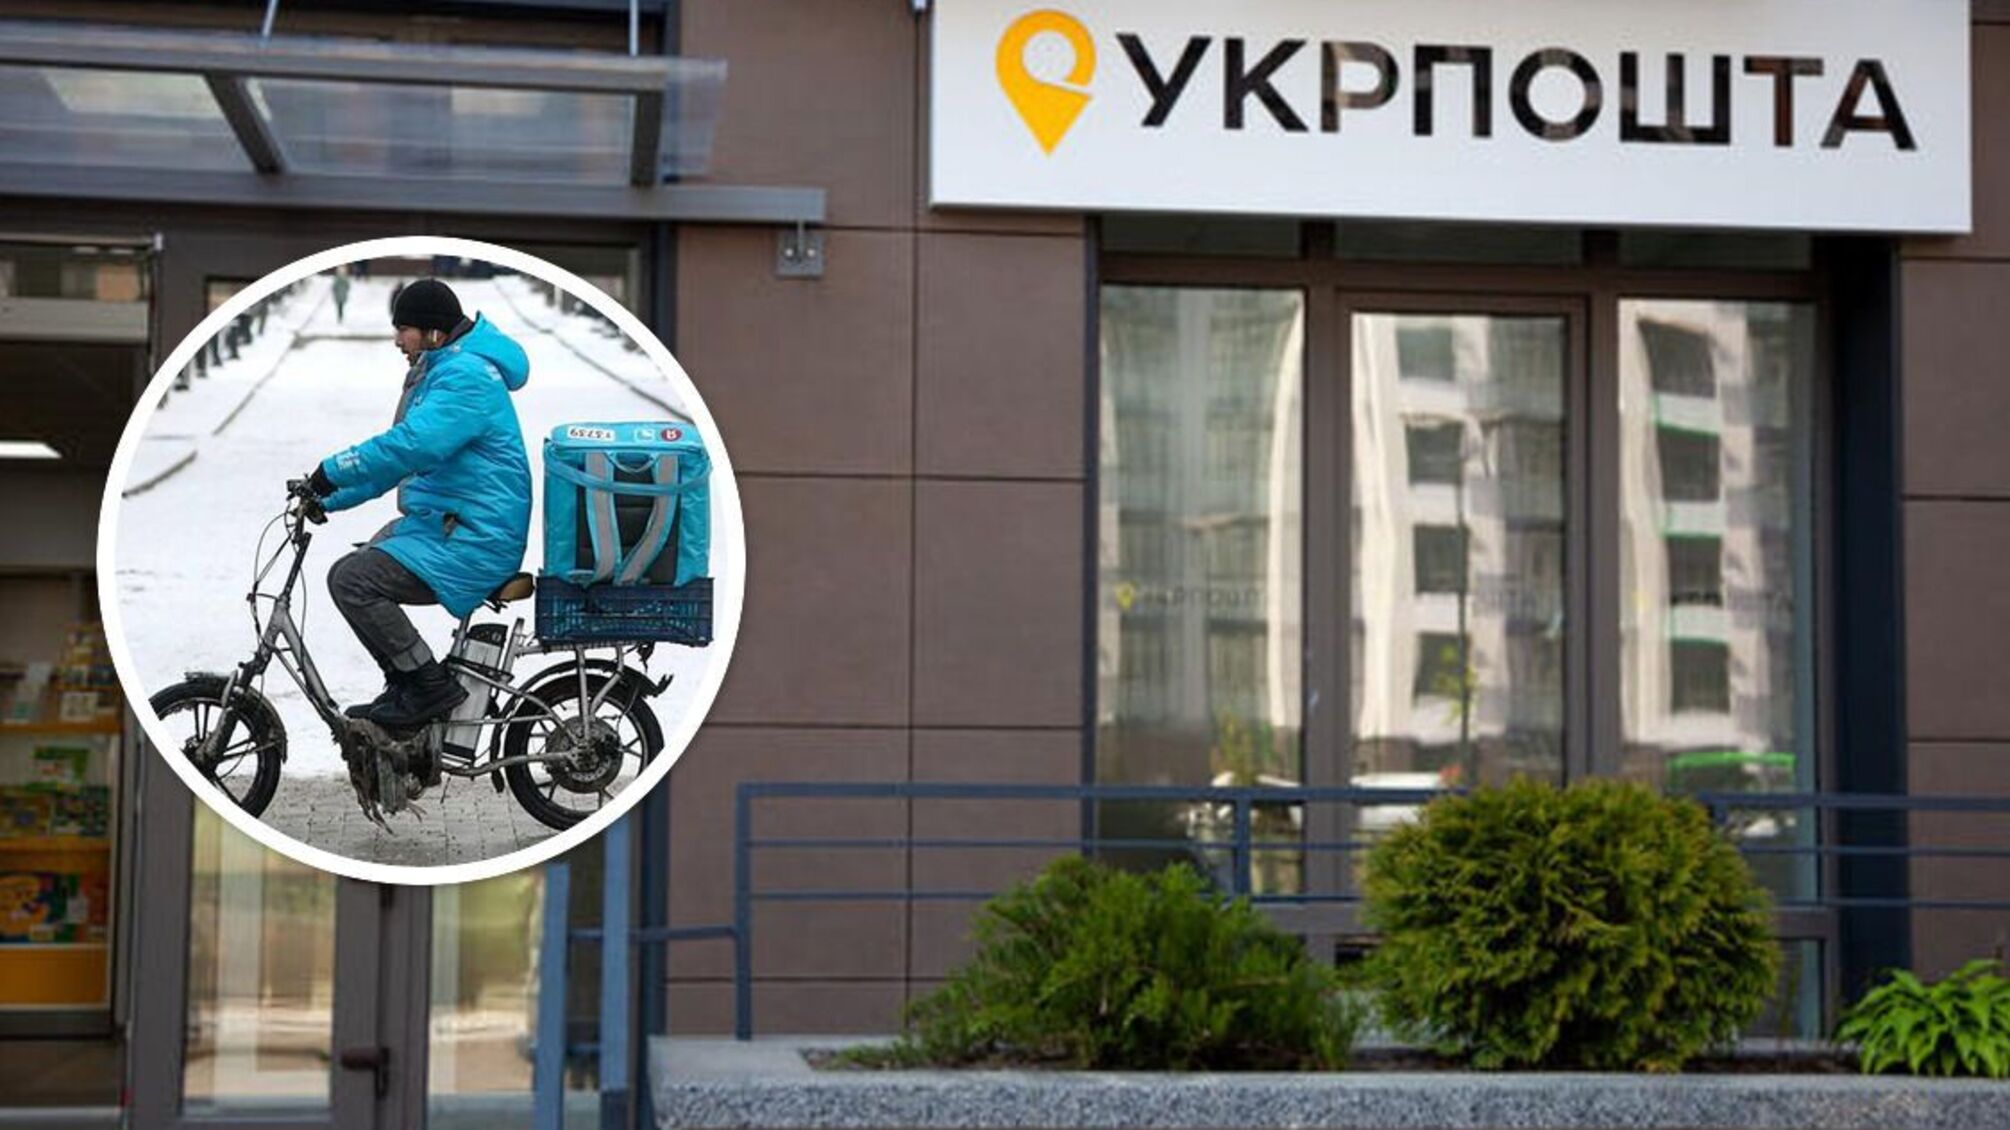 'Укрпочта' закупила 20 электровелосипедов общей стоимостью более 1,4 млн грн